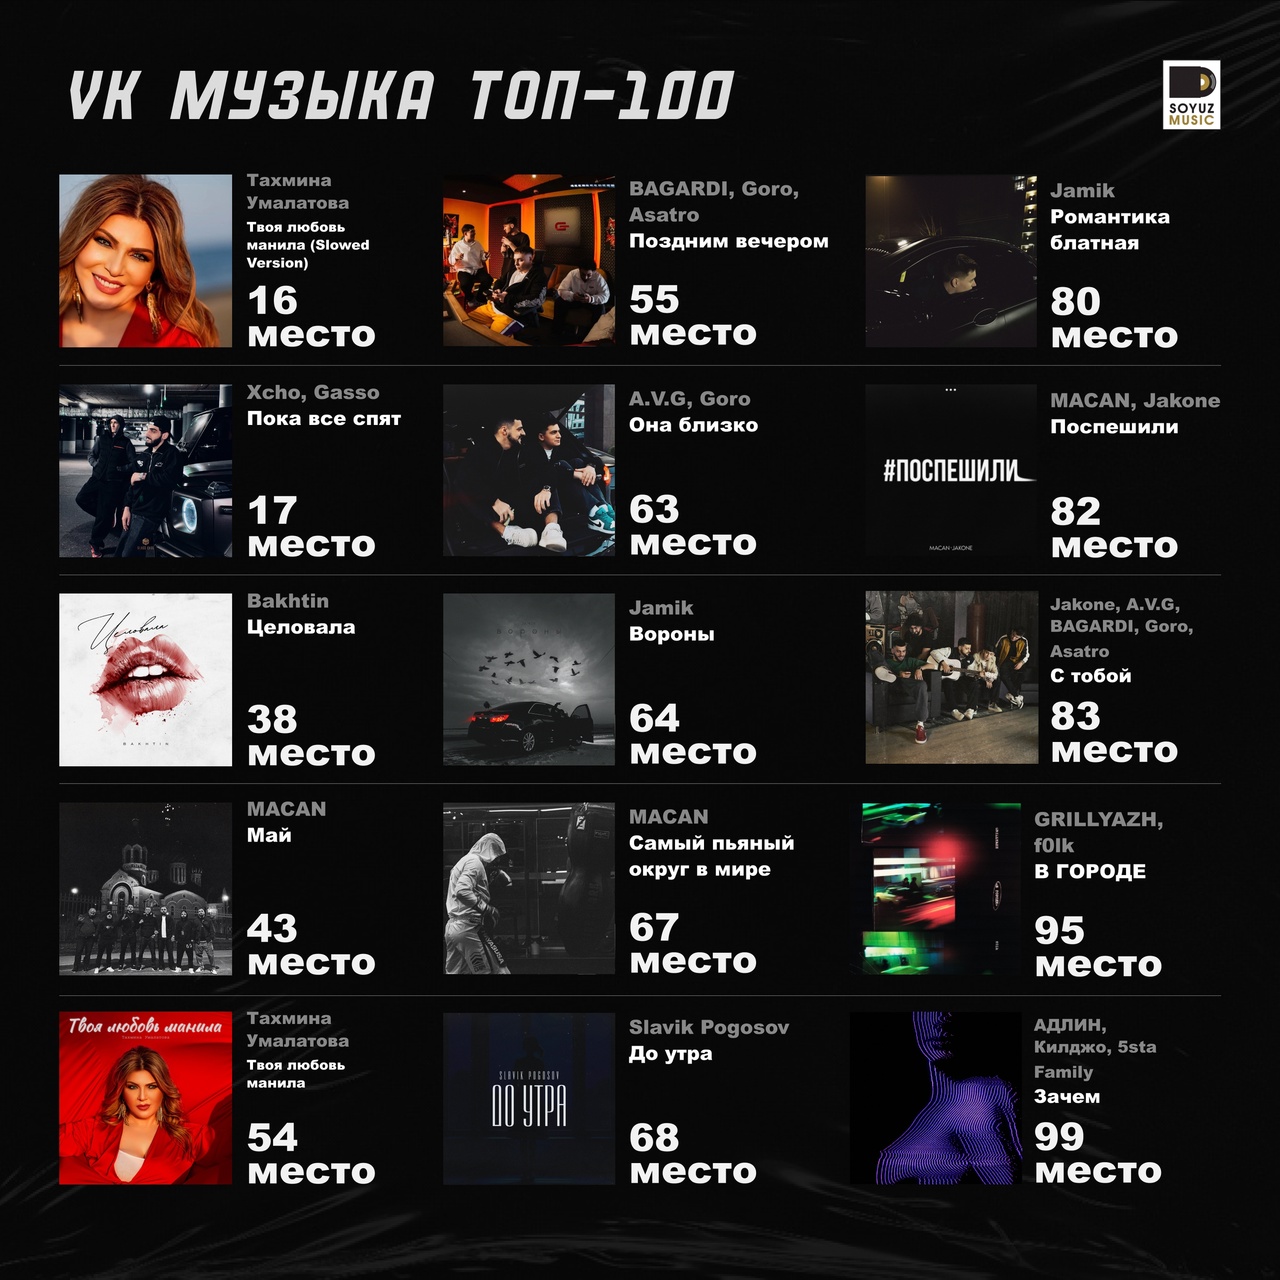 15 хитов из 100! На этой неделе пятнадцать треков заслуженно поднялись в топ-100 чарта VK Музыки.